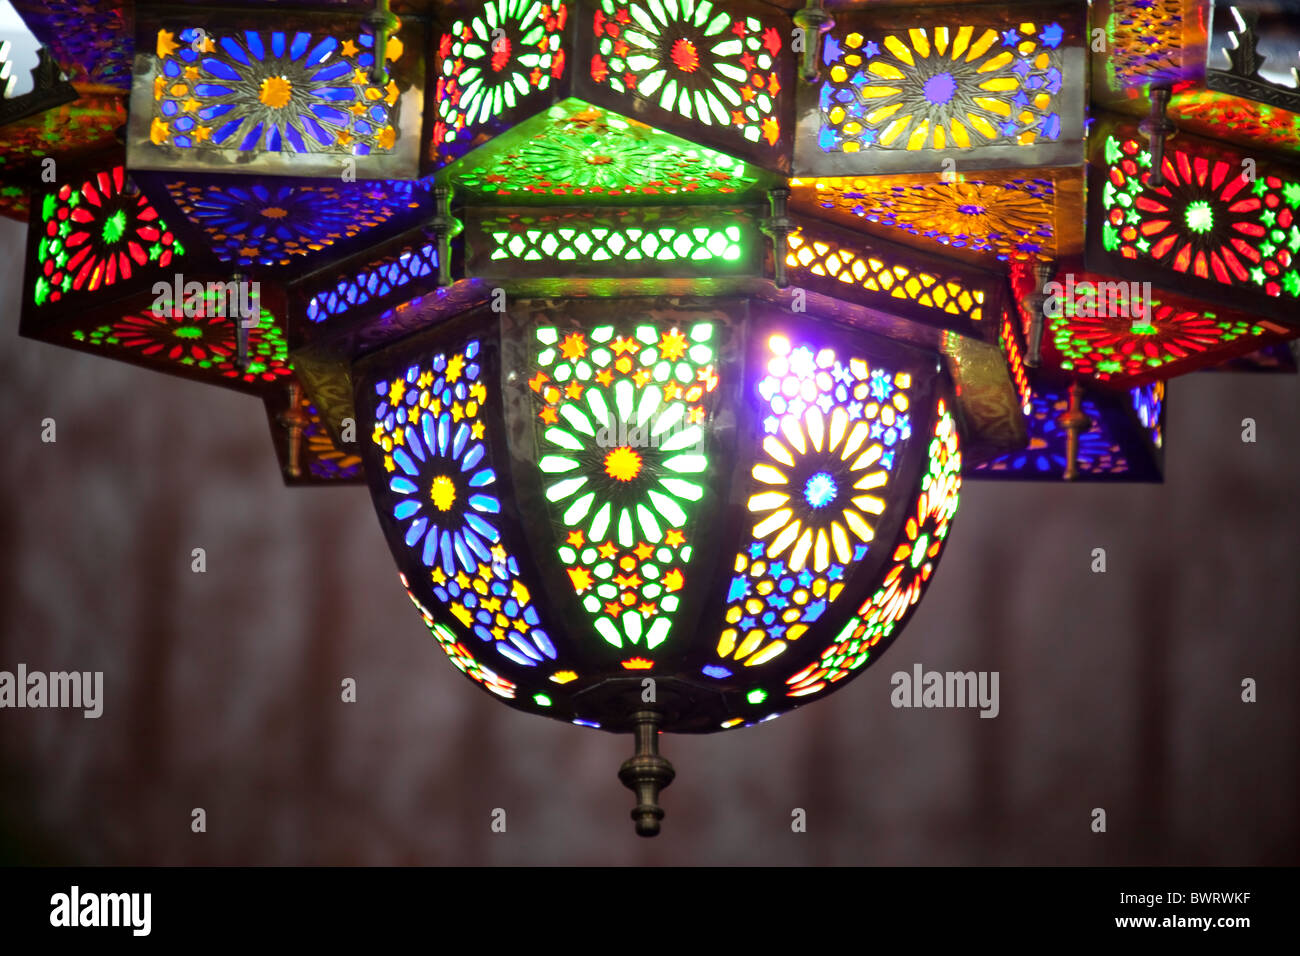 Belle lampe arabe coloré, laiton avec verre coloré. Banque D'Images